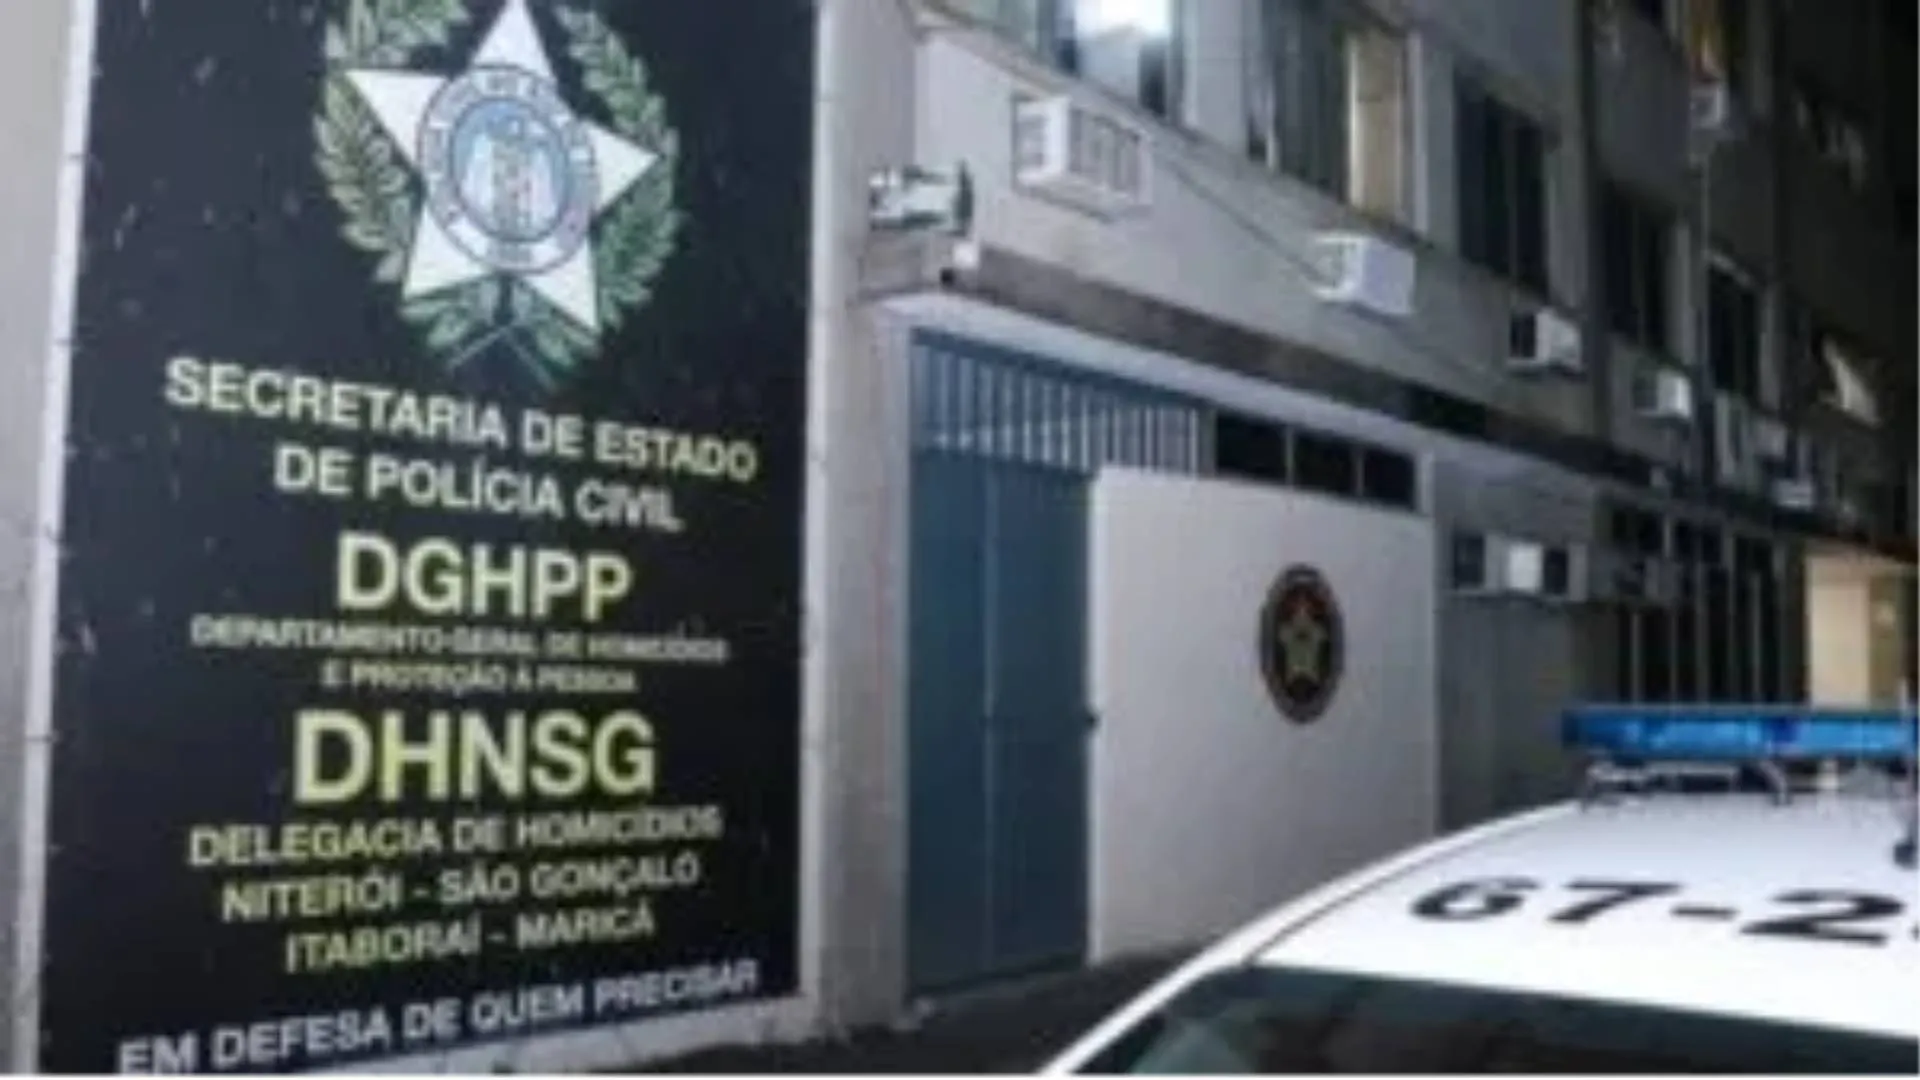 O caso foi registrado na Delegacia de Homicídios de Niterói, São Gonçalo e Itaboraí (DHNSG)